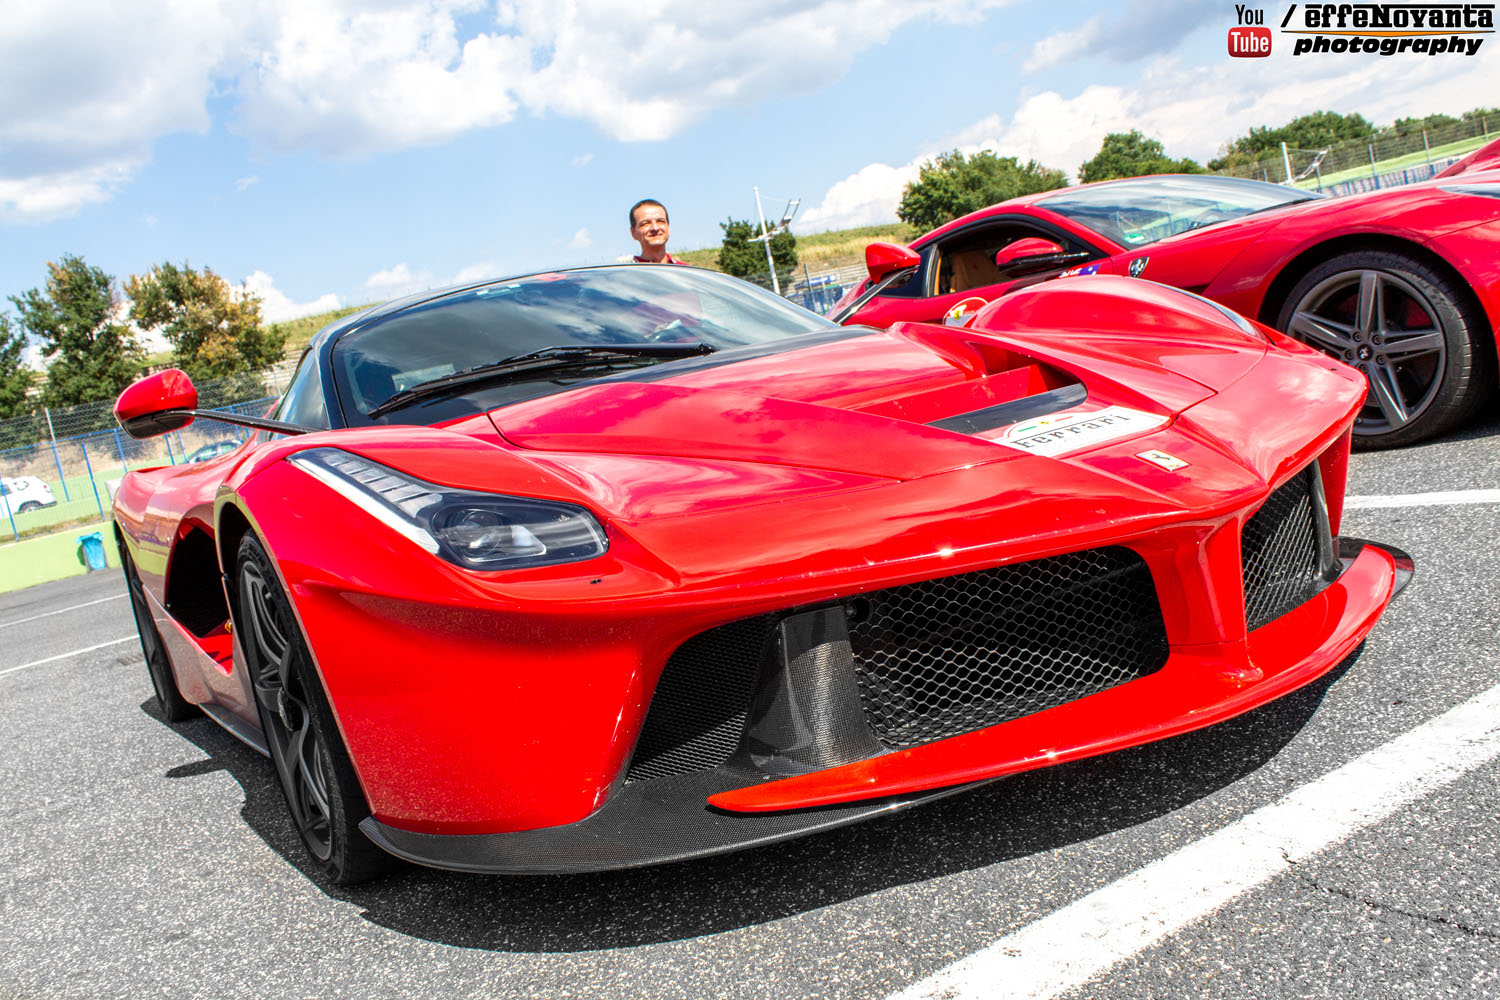 Event: Ferrari Cavalcade 2015